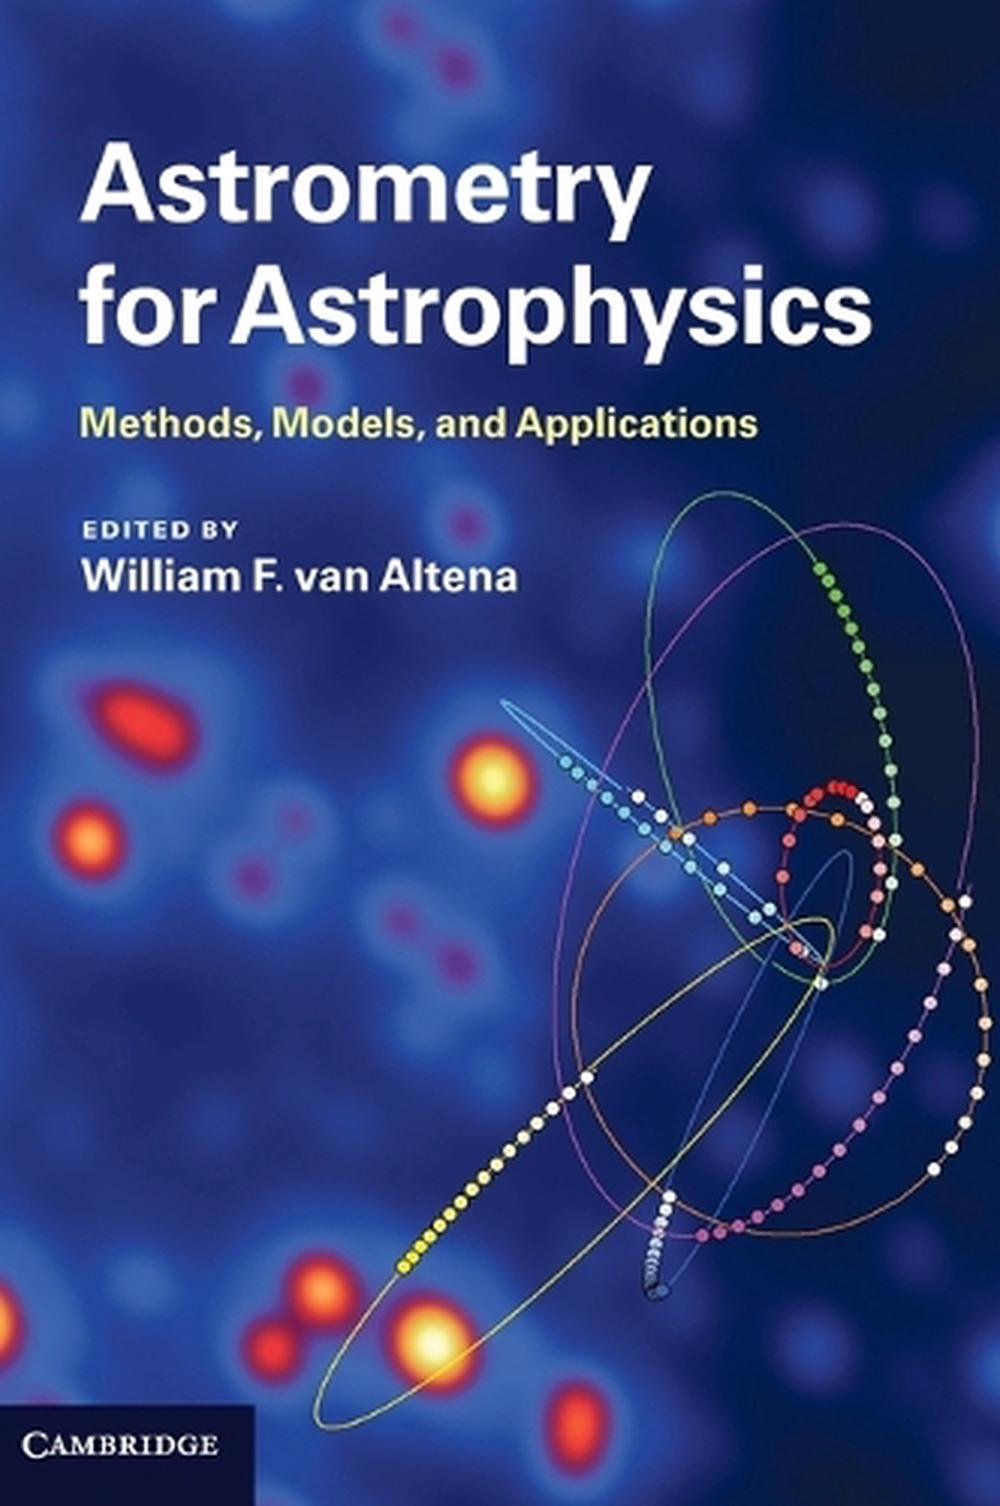 astrometry schools